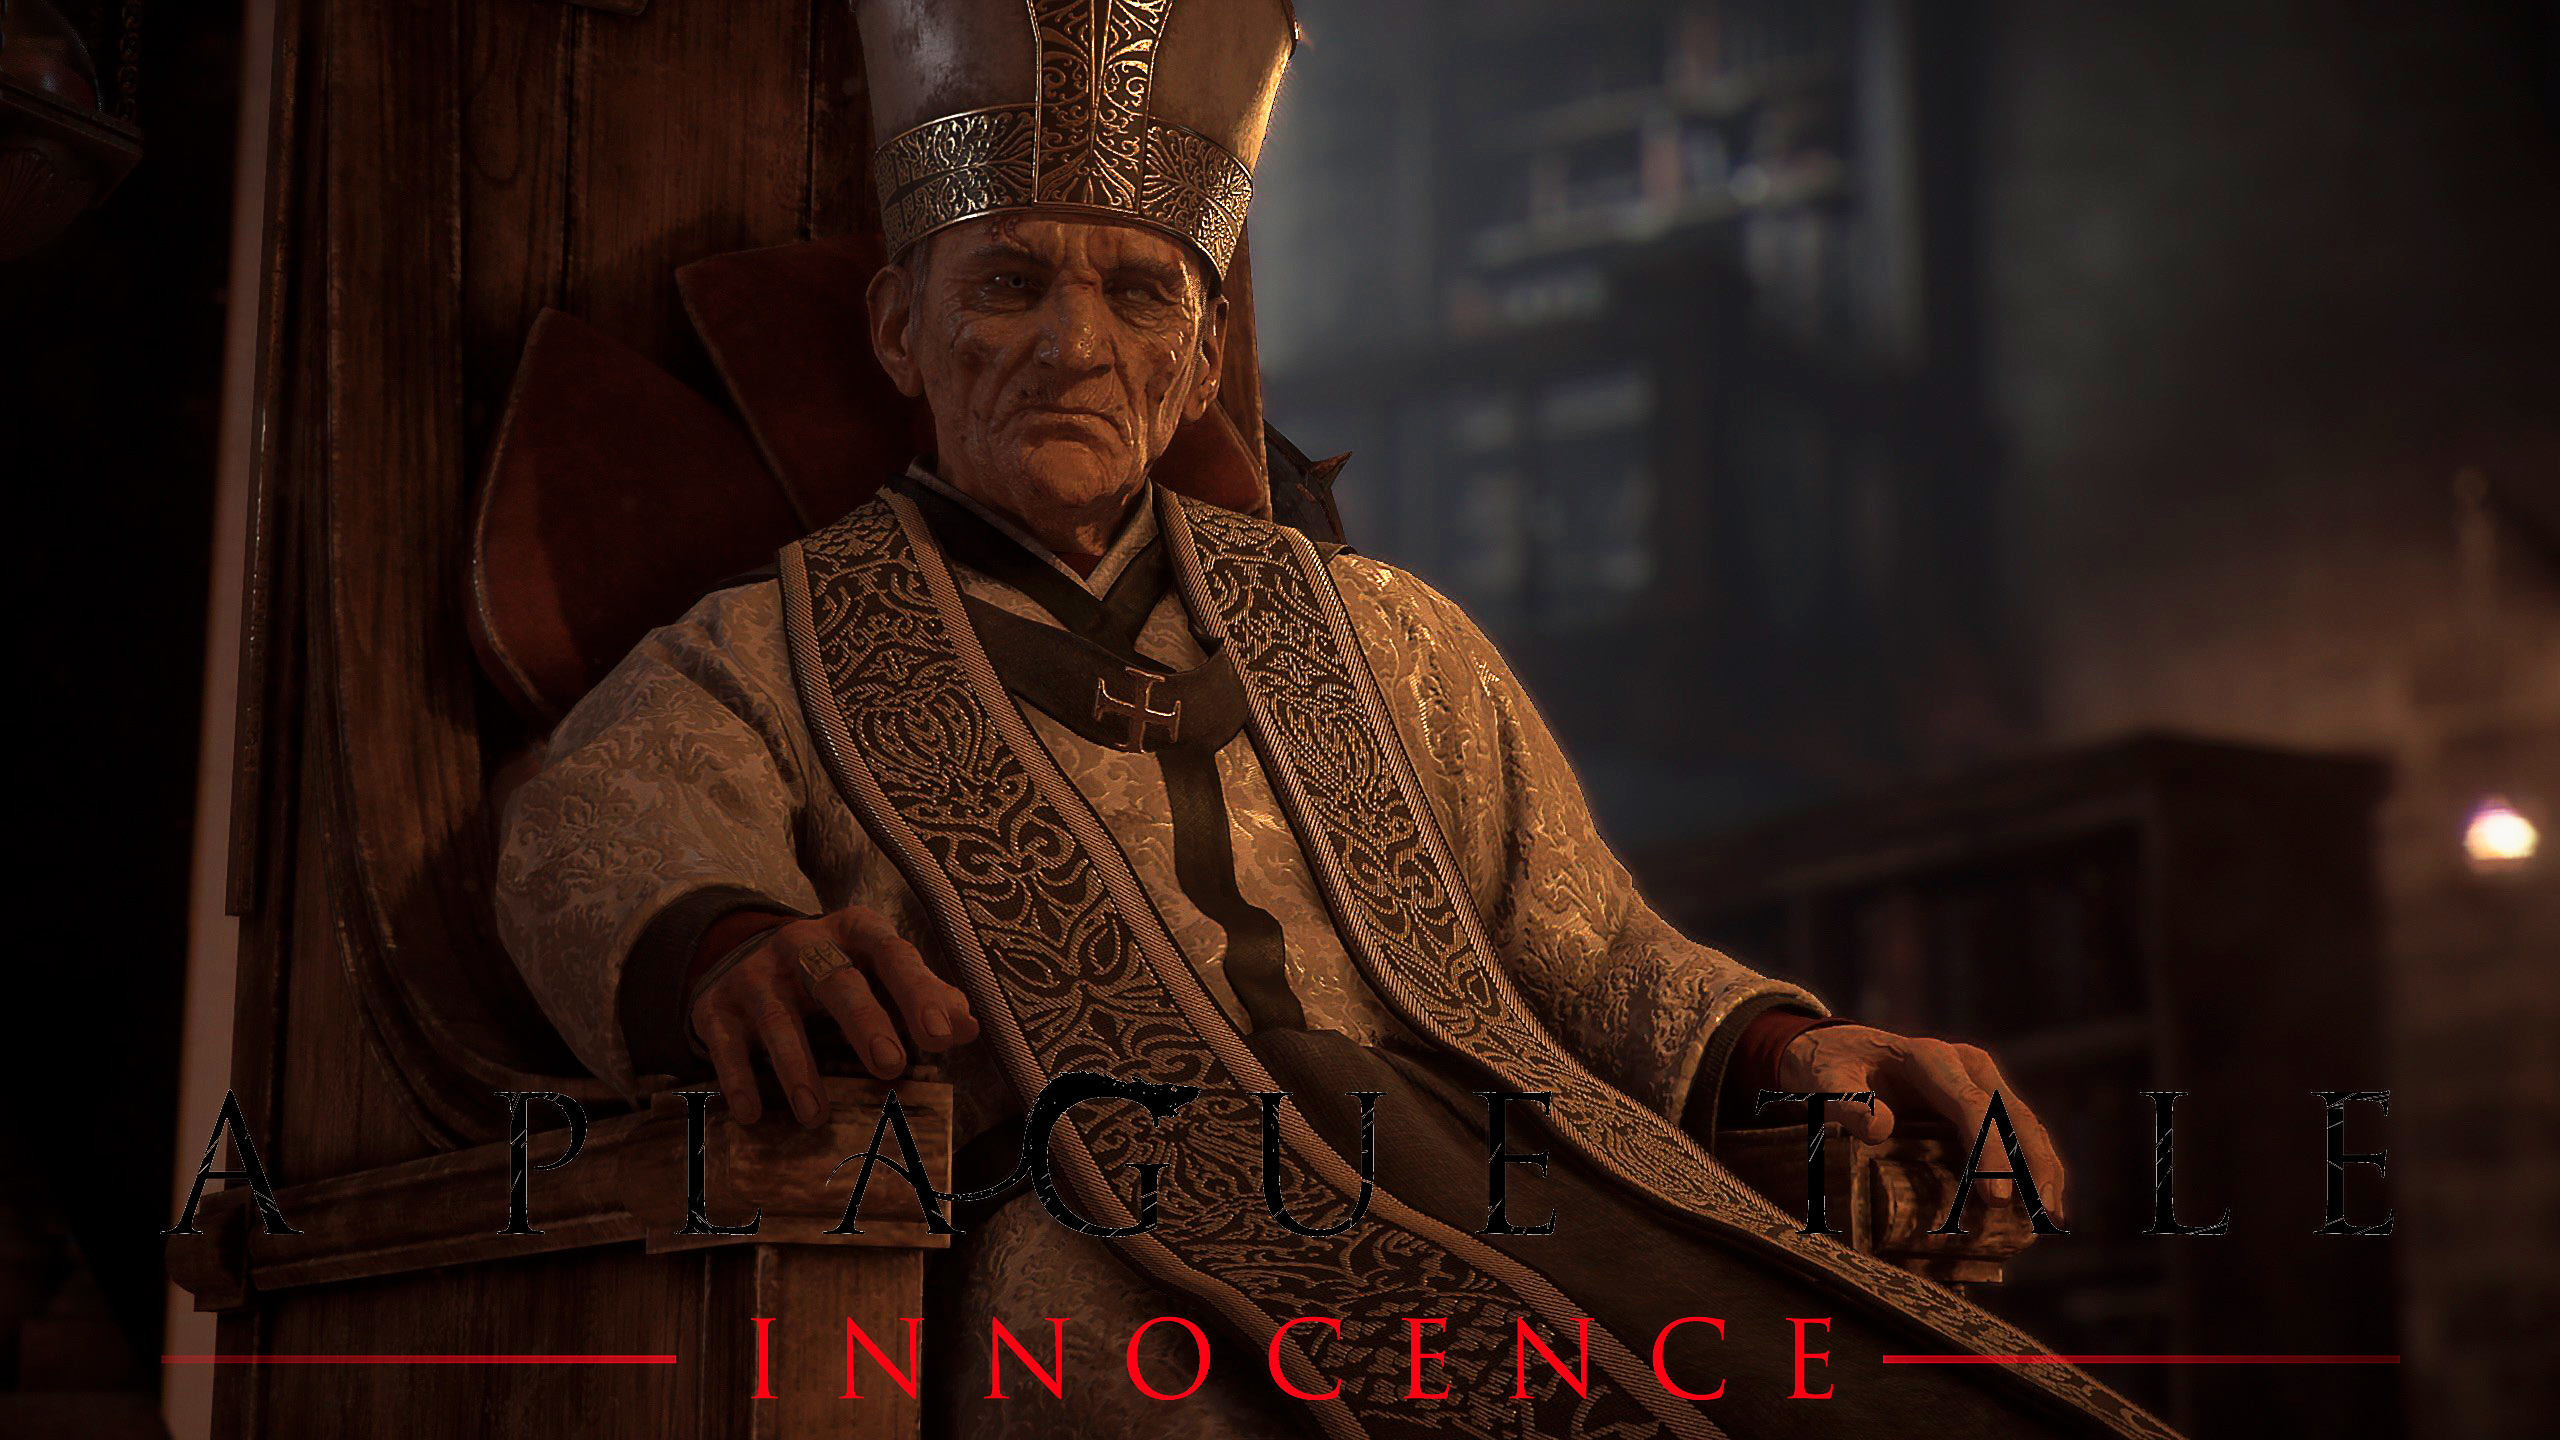 Спасение кузнеца из лап инквизиции. A Plague Tale: Innocence 15 серия